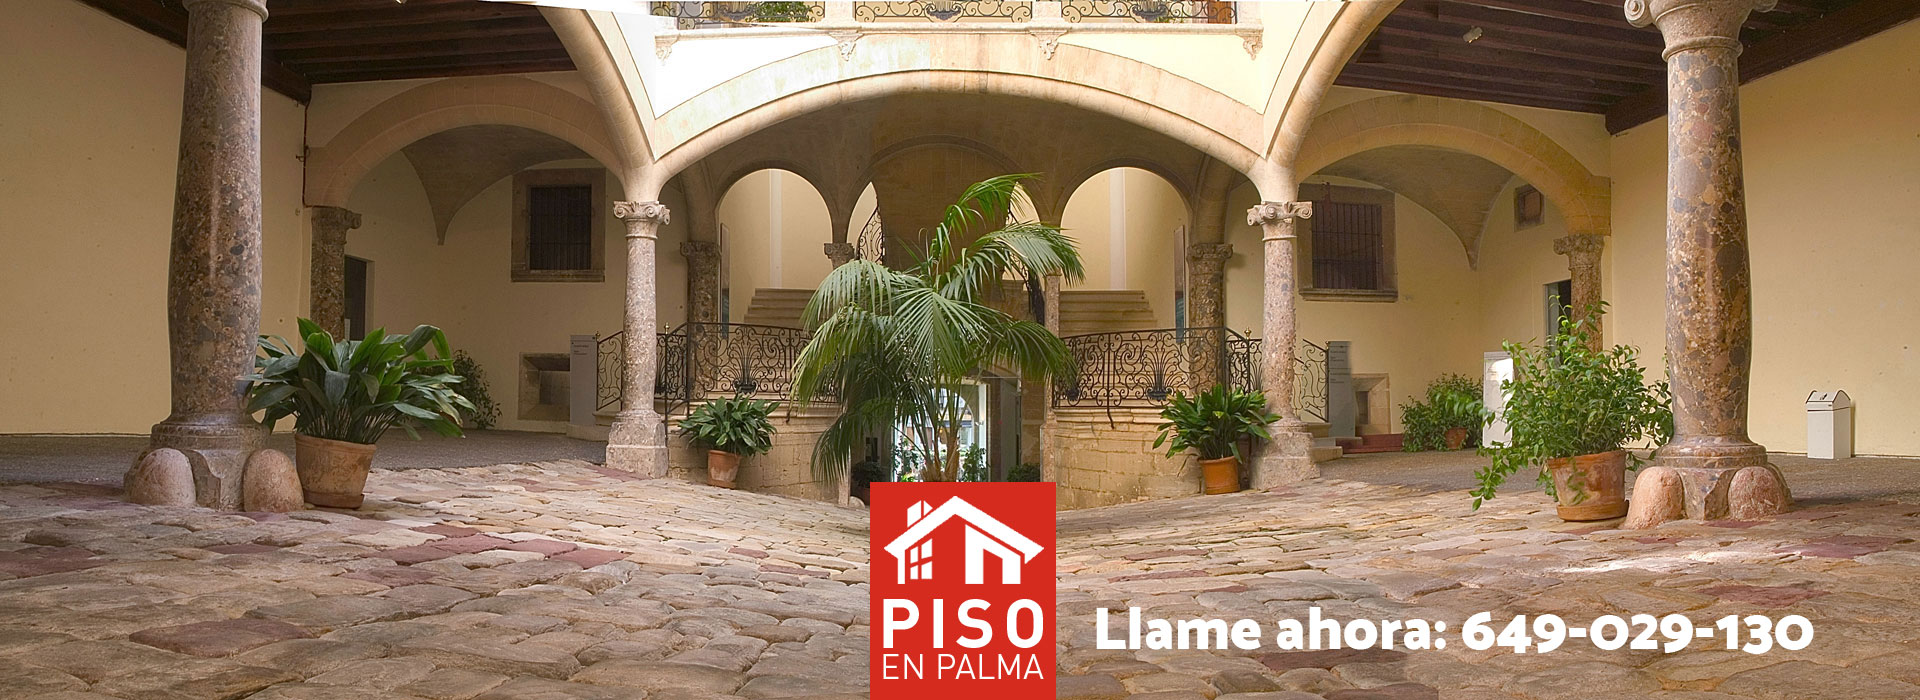 Venta y alquiler de pisos, apartamentos y chalets en Palma